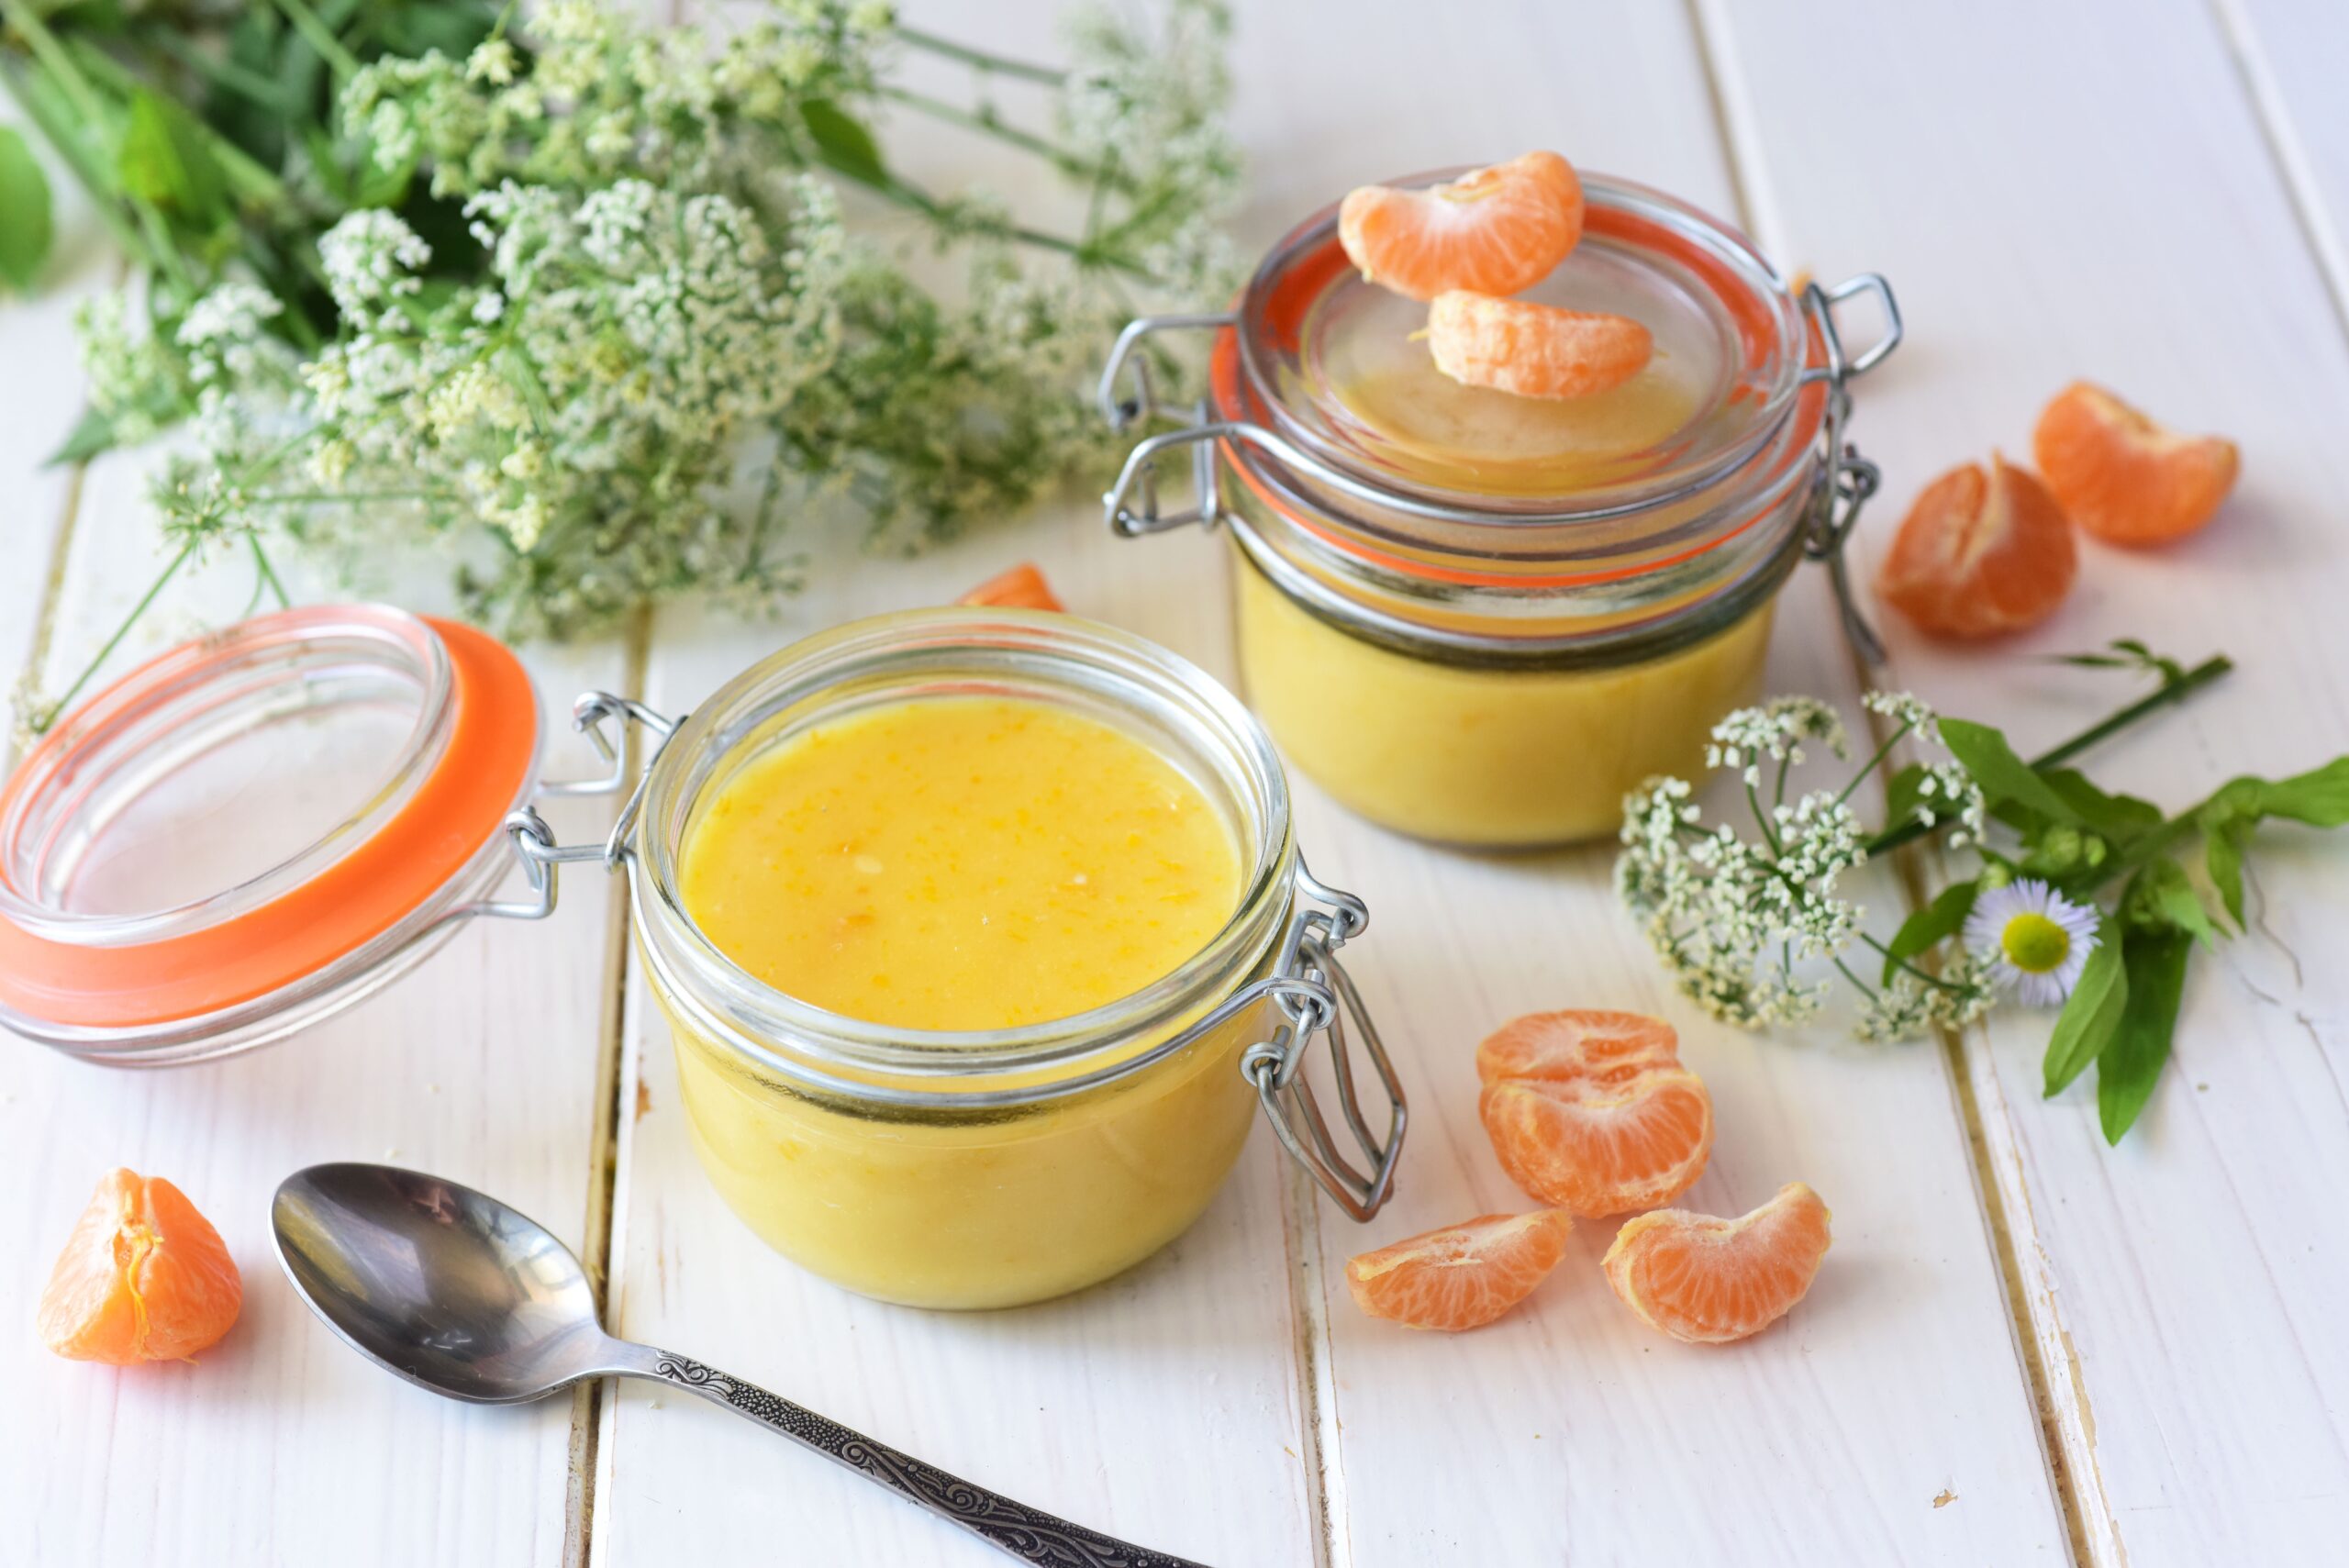 Crema pasticciera al mandarino: profumatissima e originale